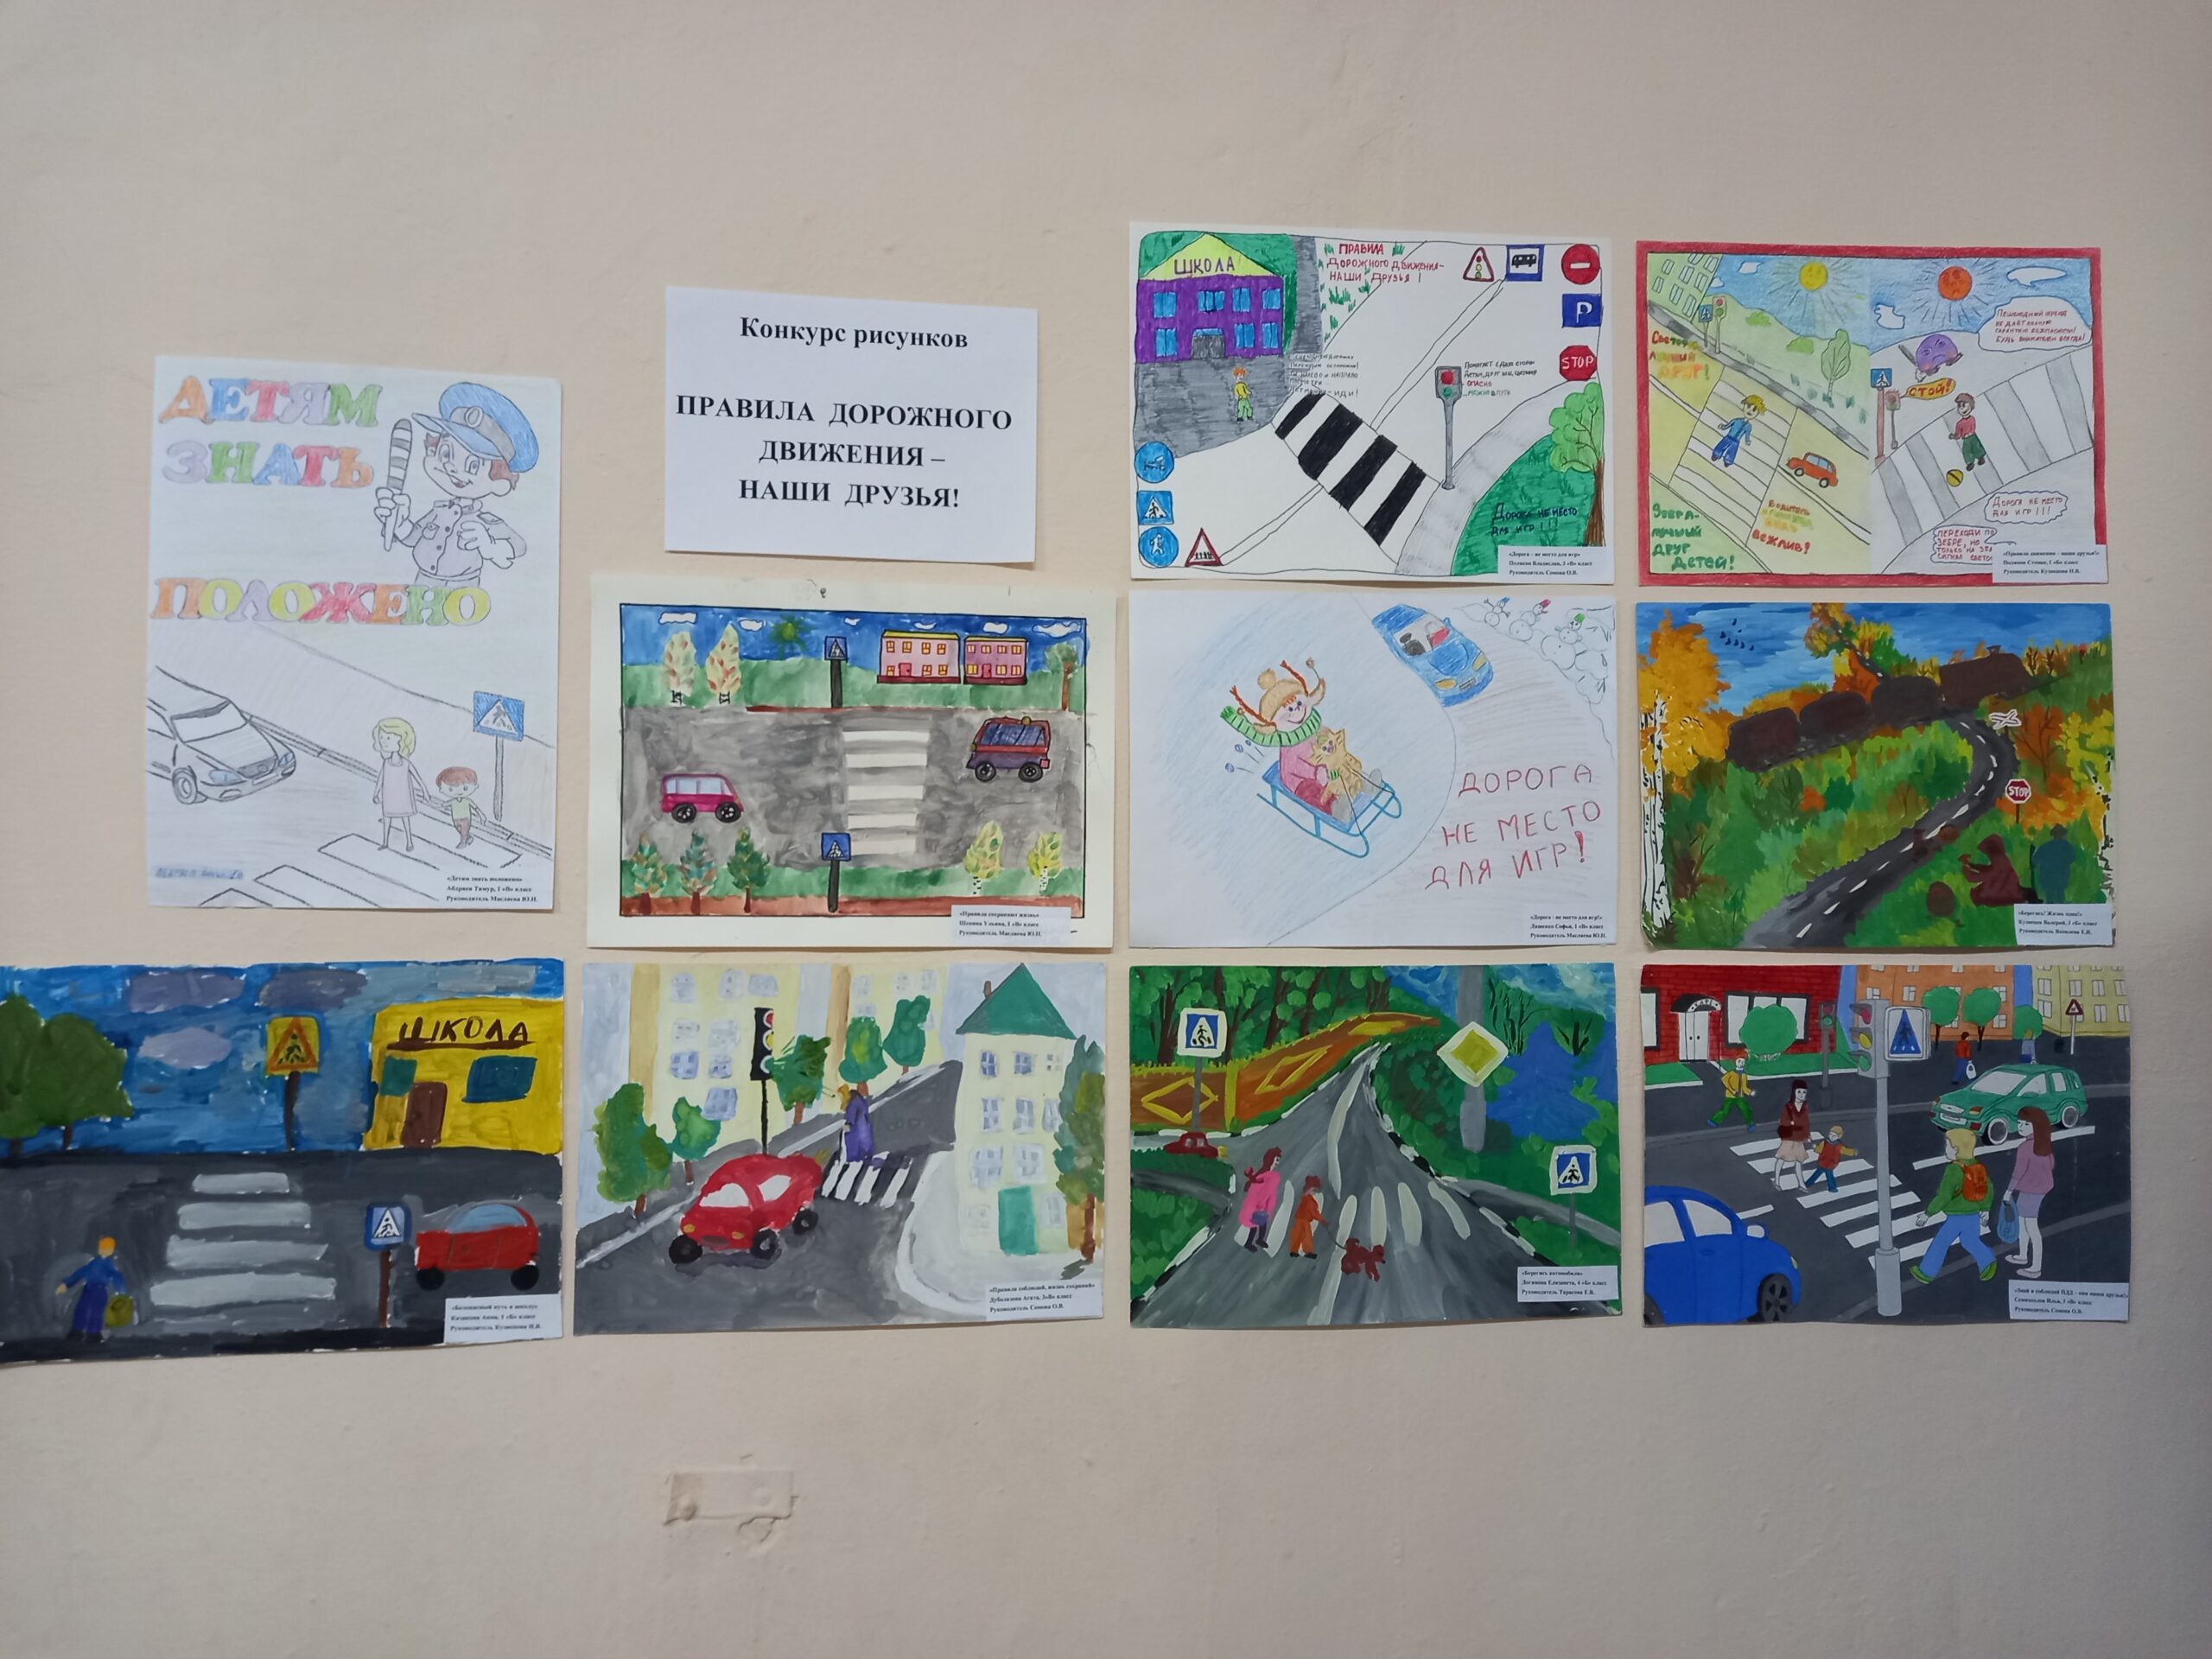 Конкурс рисунков по ПДД правила дорожного движения -наши друзья